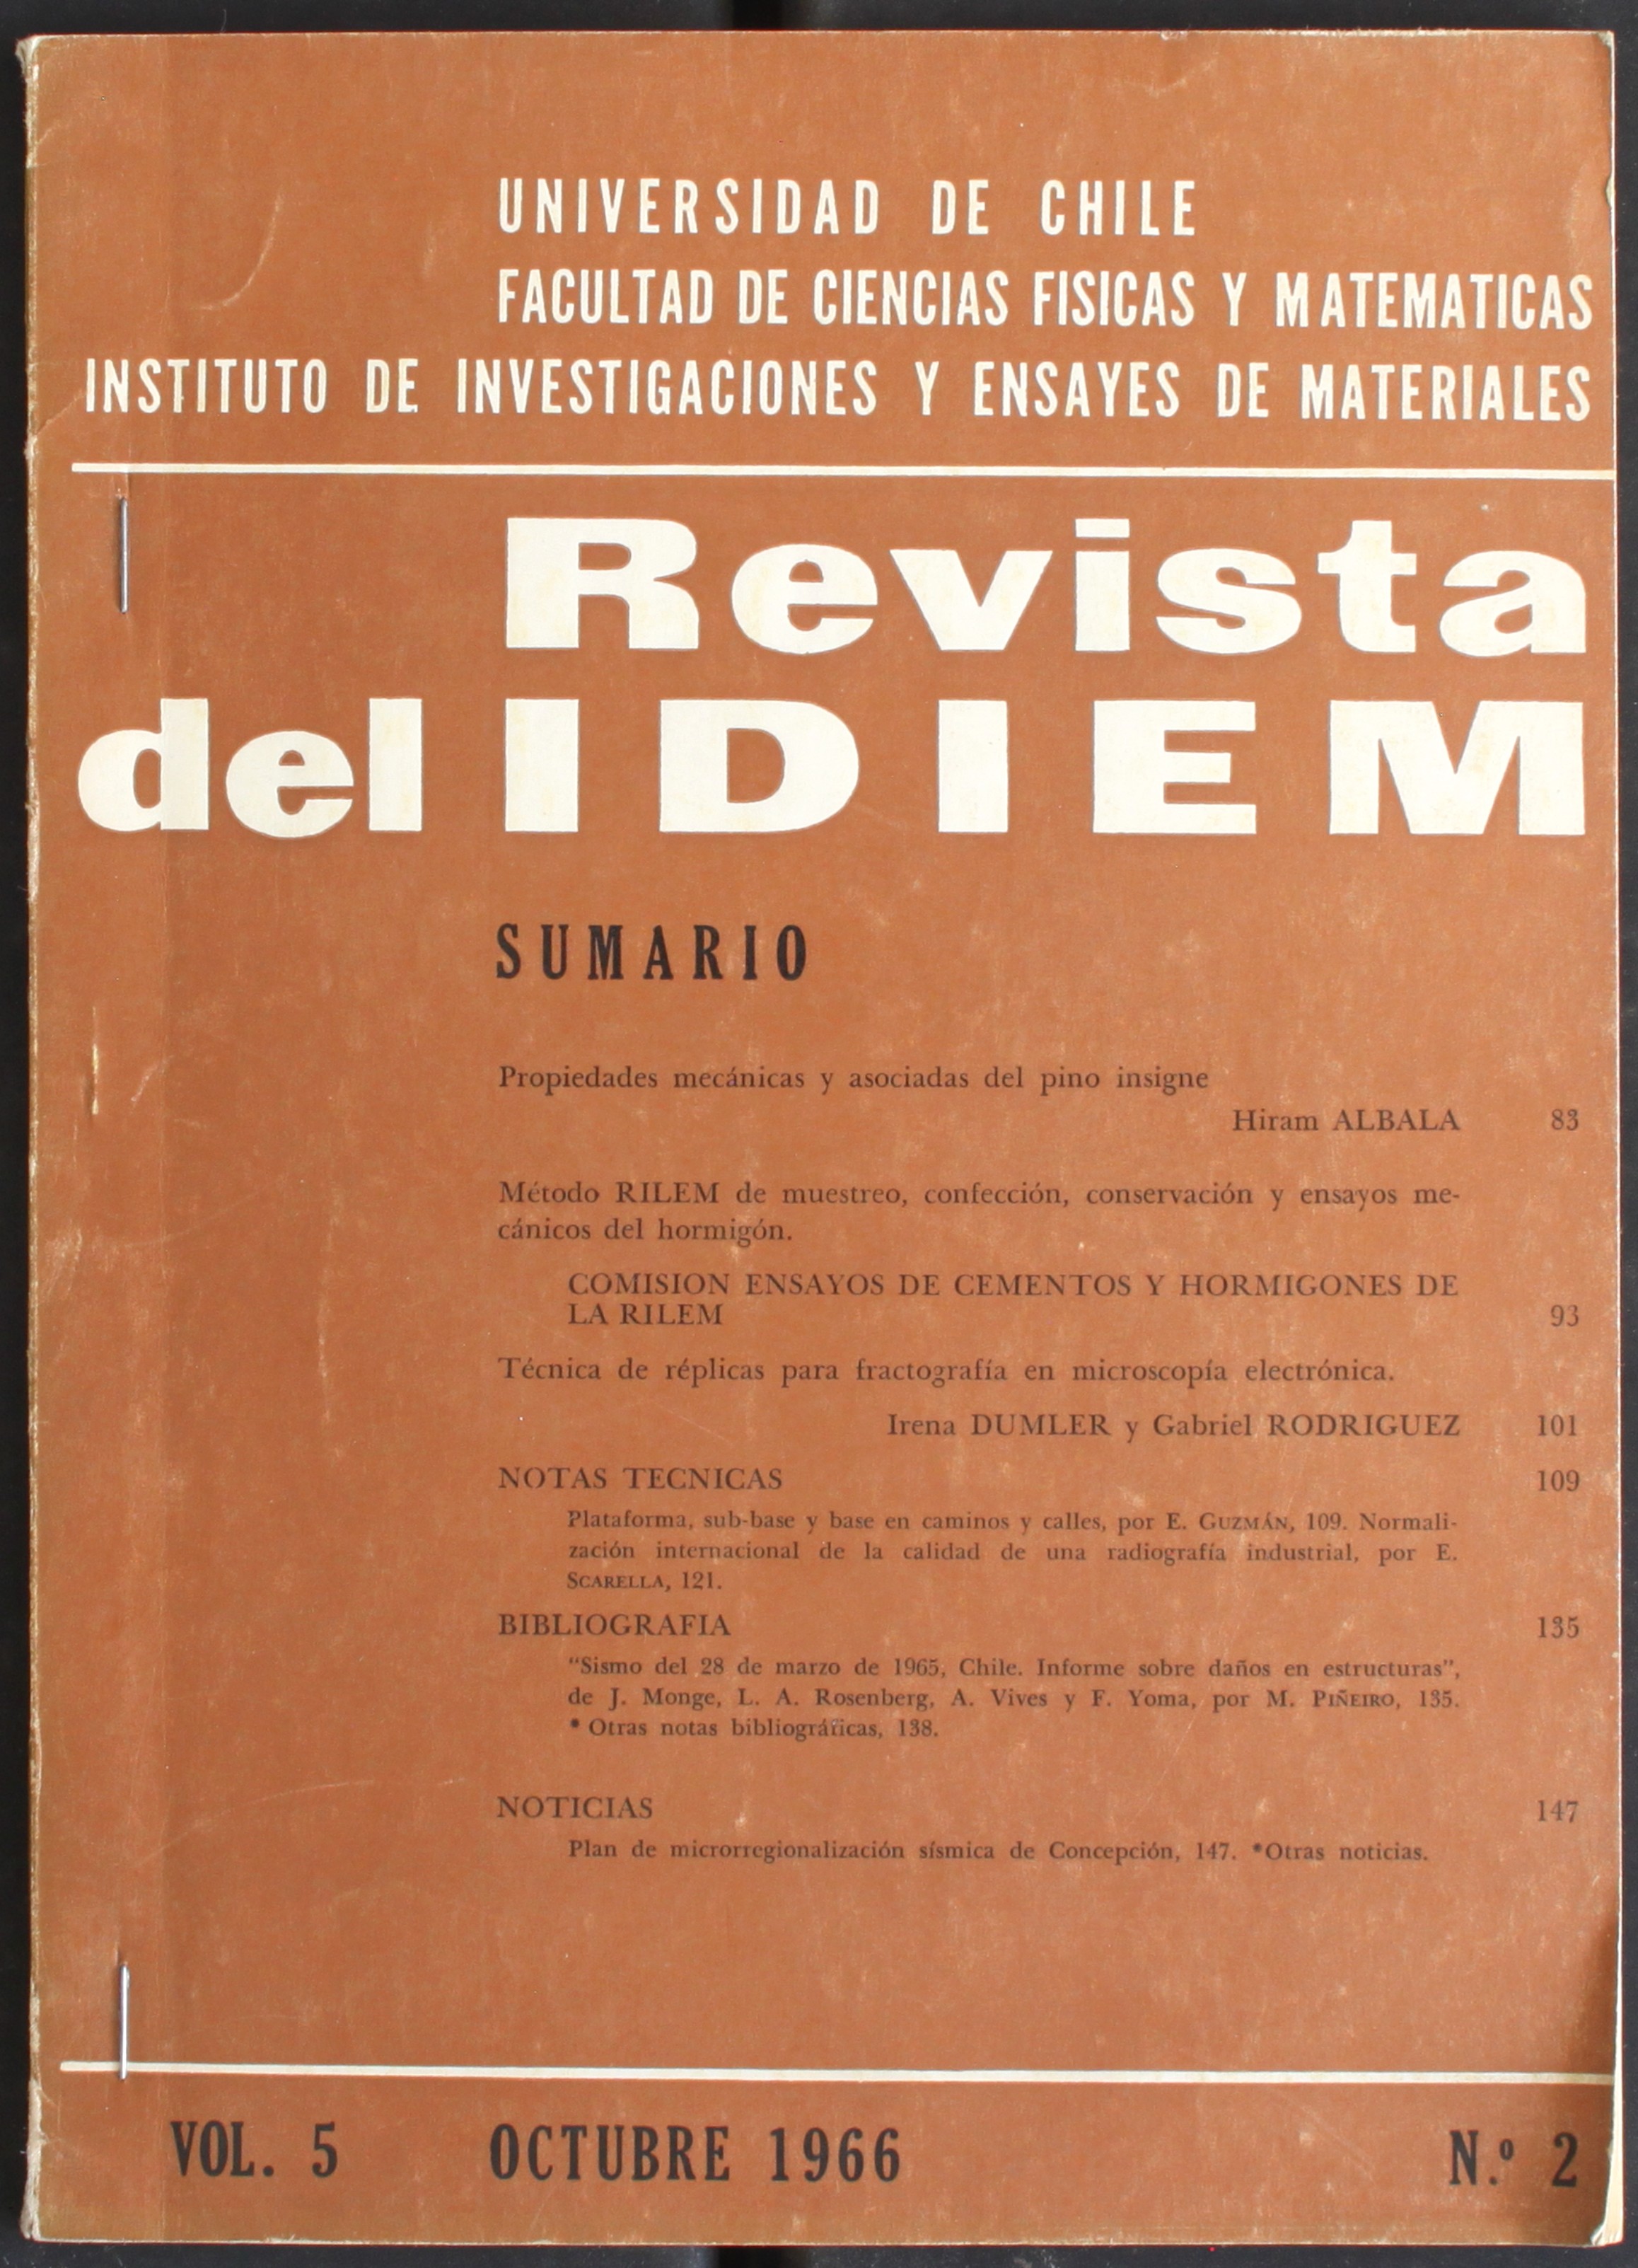 												Ver Vol. 3 Núm. 2 (1964): Año 1964, julio
											